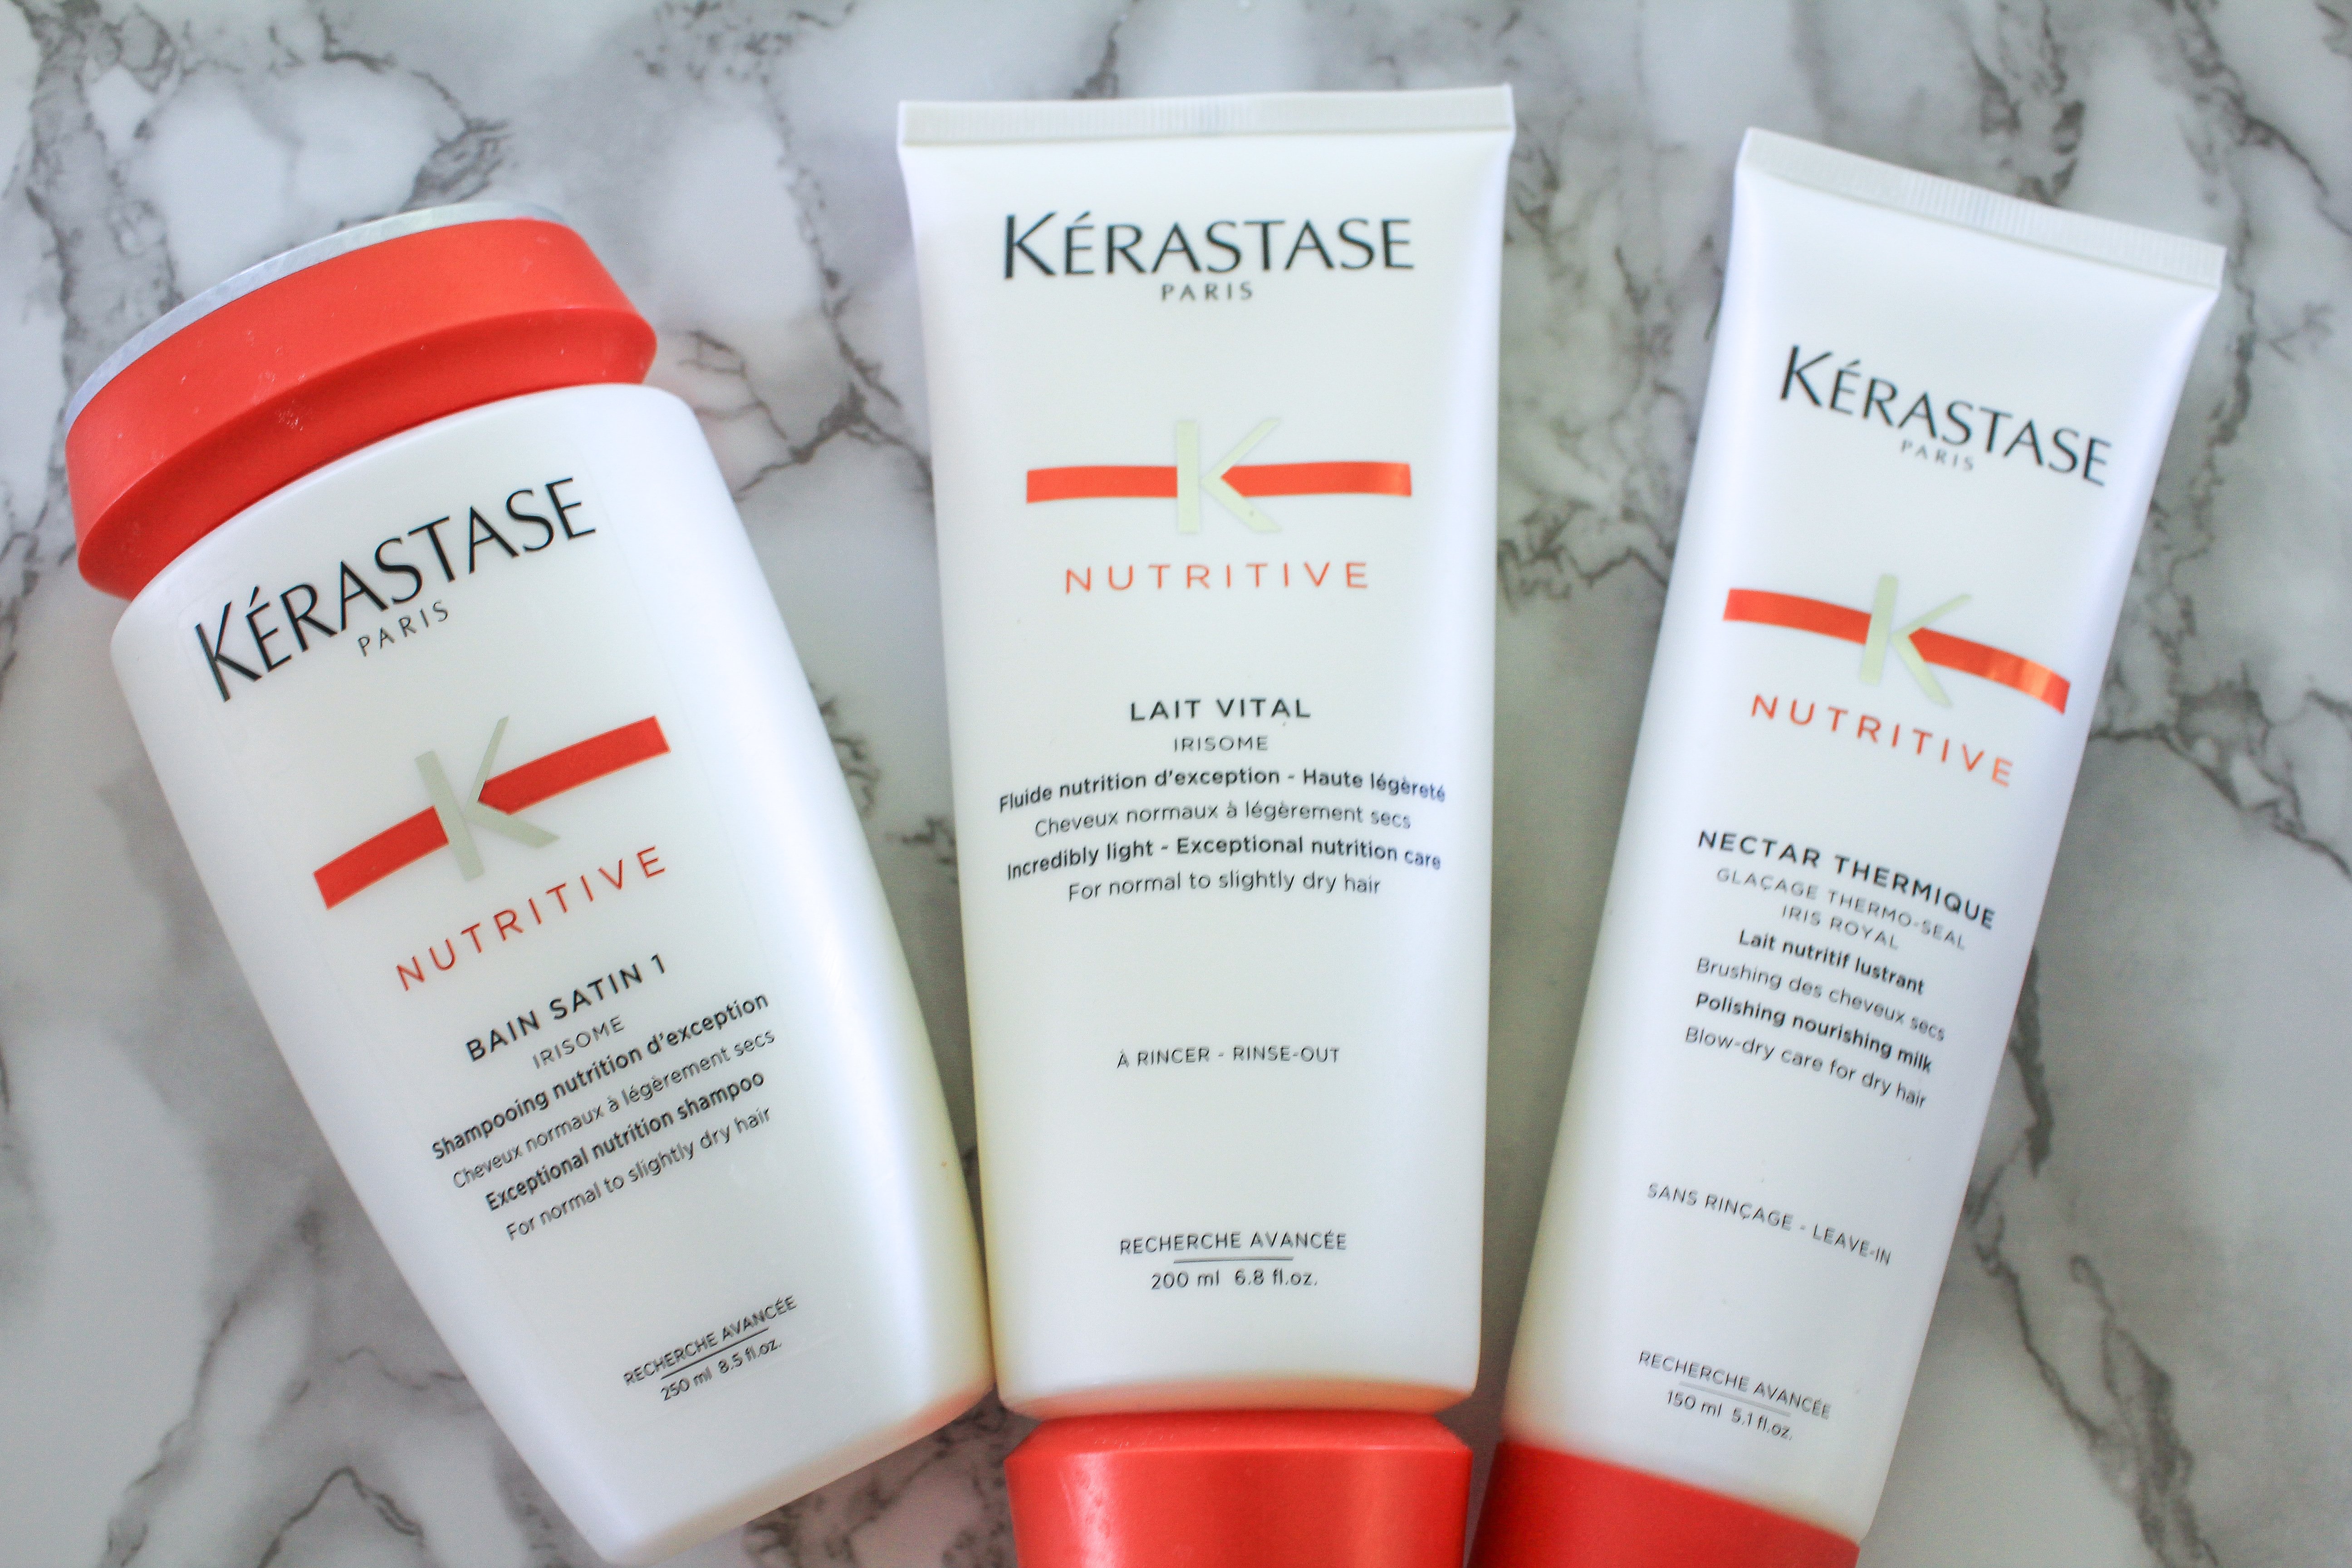 Kerastase Hair Products Review - Kelsie Kristine